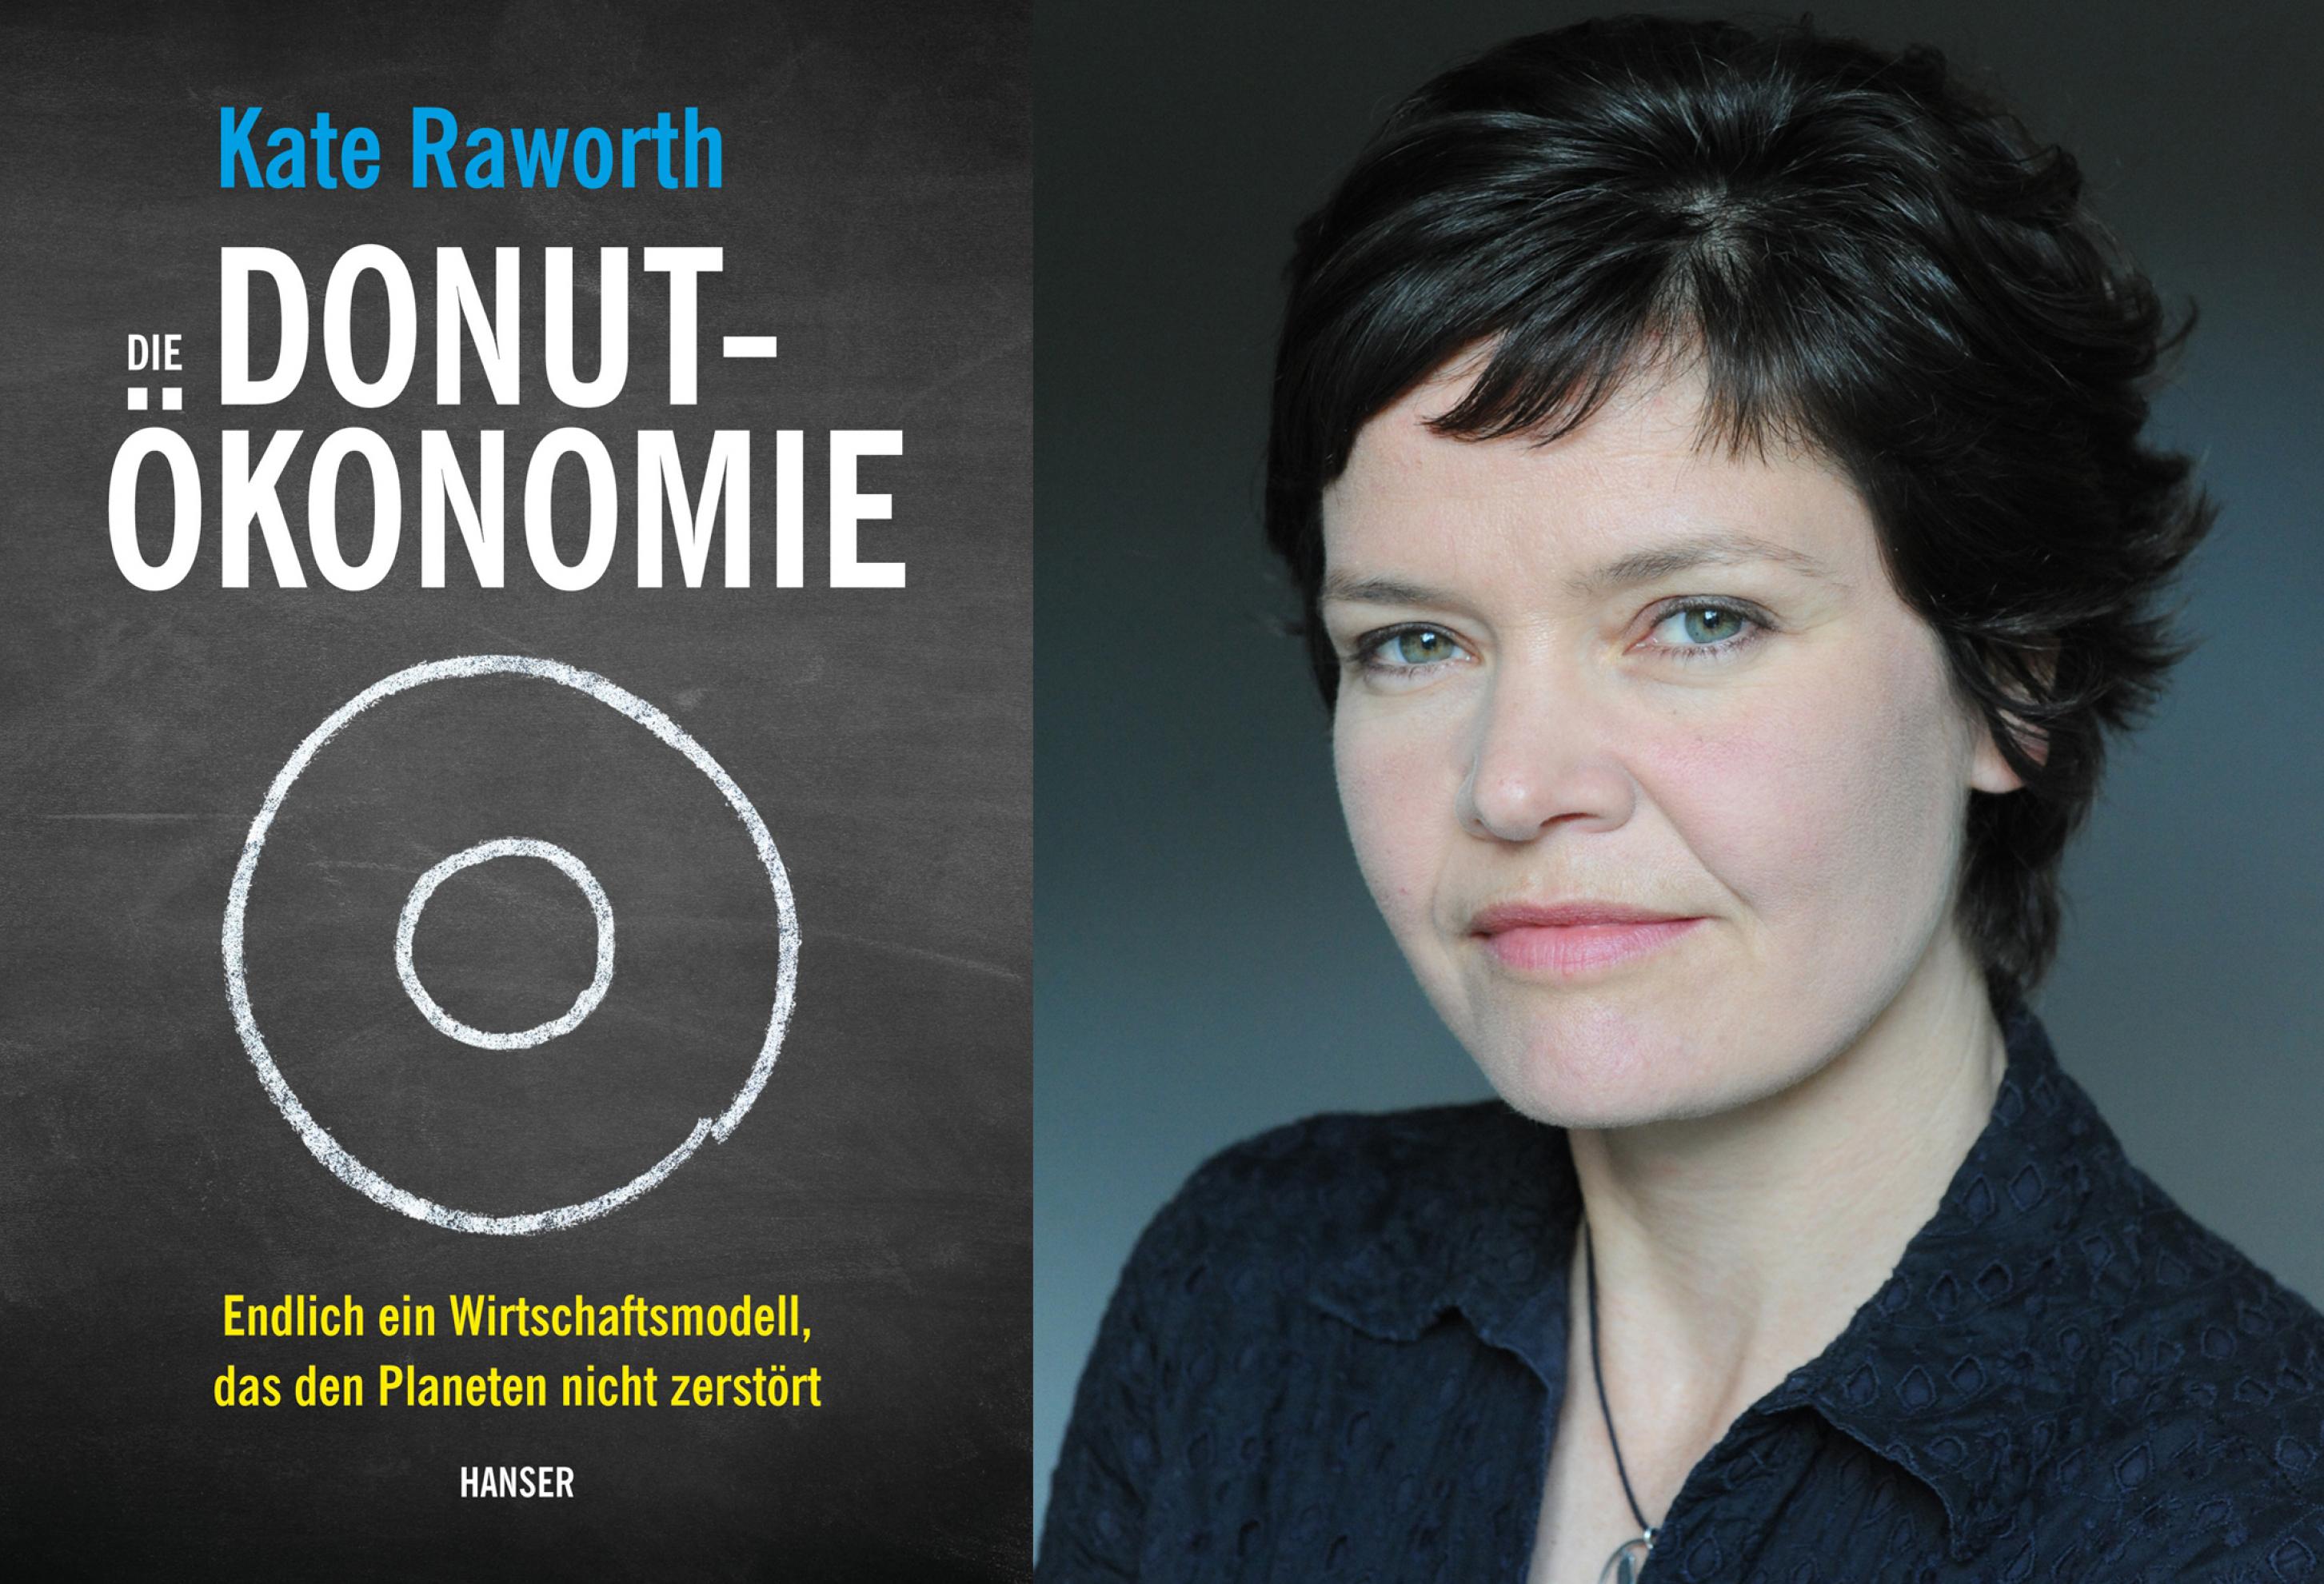 Zusammengesetzte Aufnahme aus dem Cover des Buchs „Die Donut-Ökonomie“ links und einem Porträt der Autorin Kate Raworth rechts.